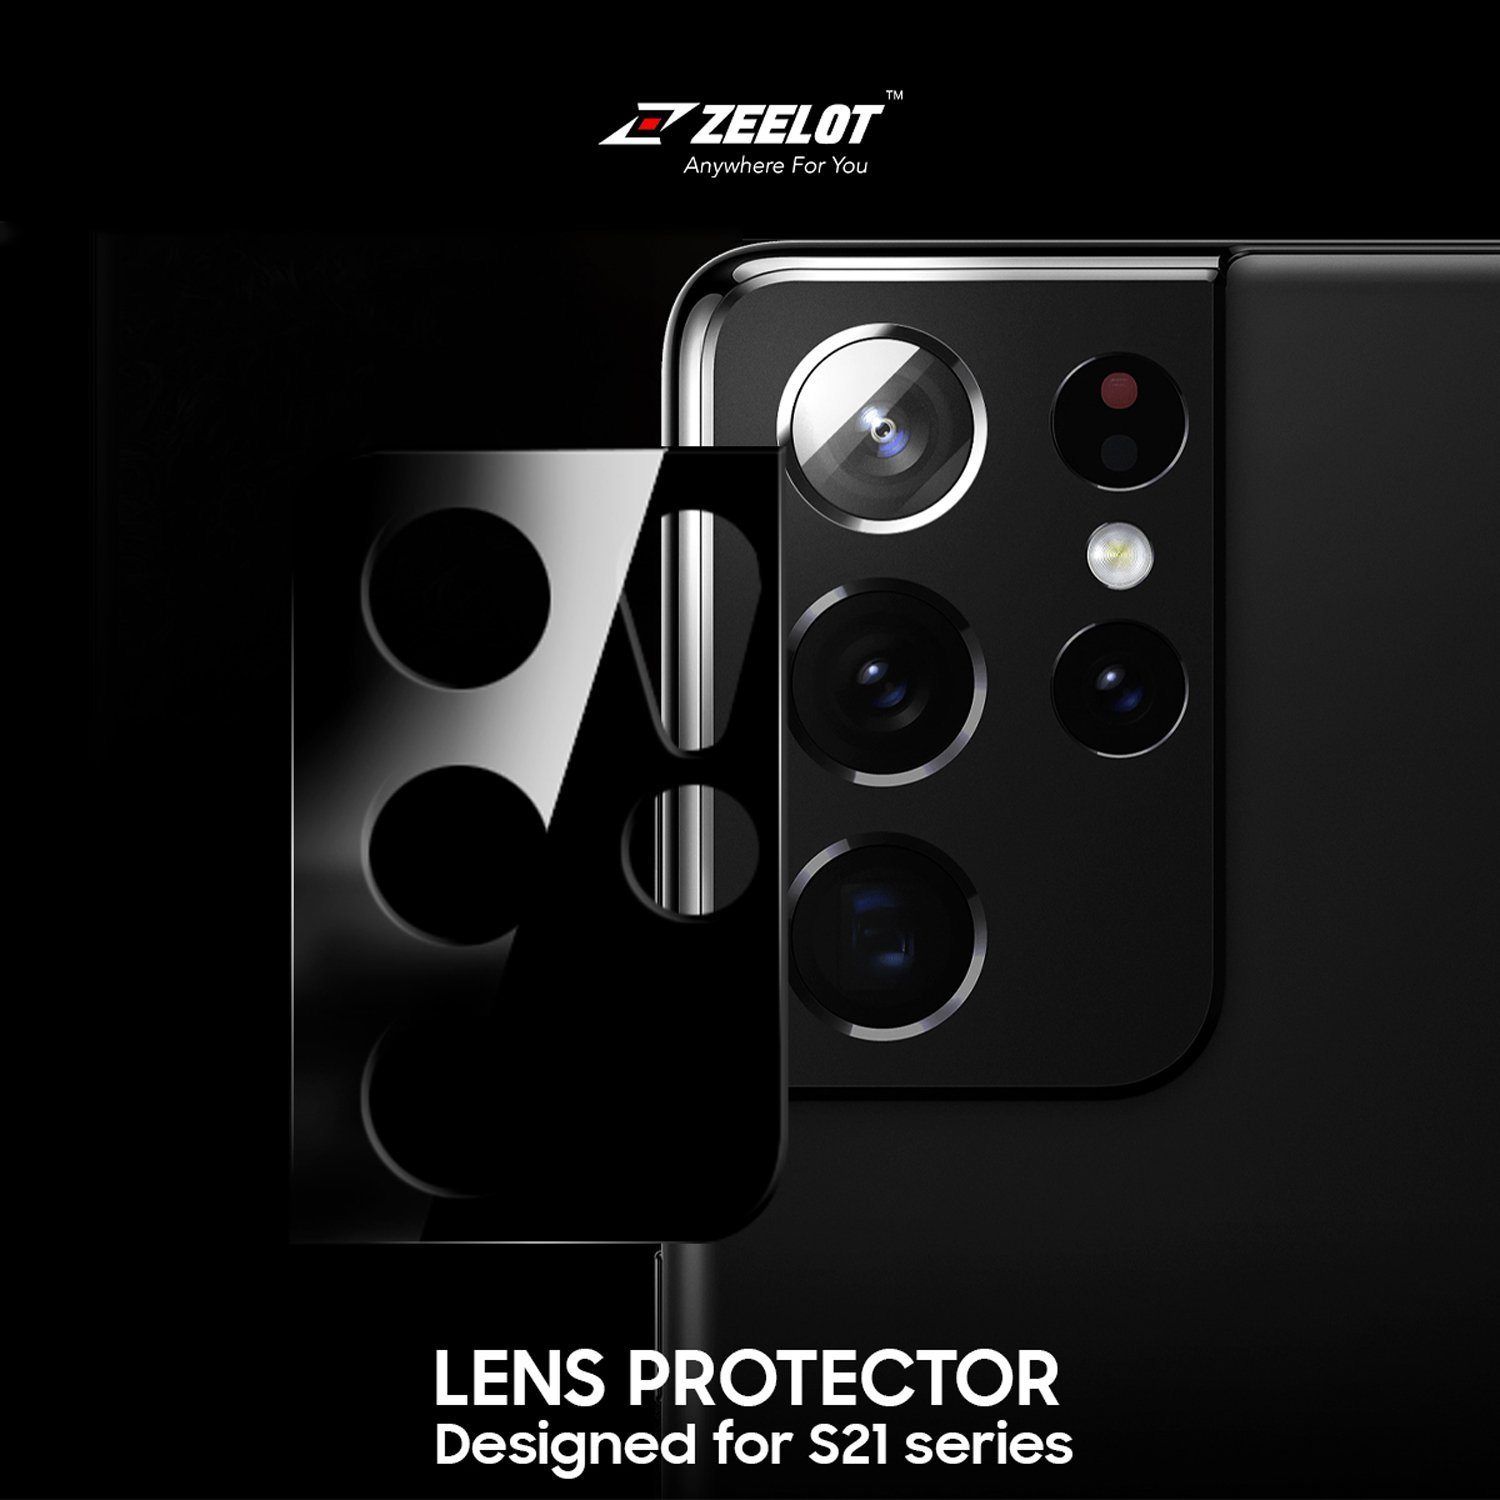 ZEELOT Samsung Galaxy S21+ Lens Protector, Black S21 ZEELOT 